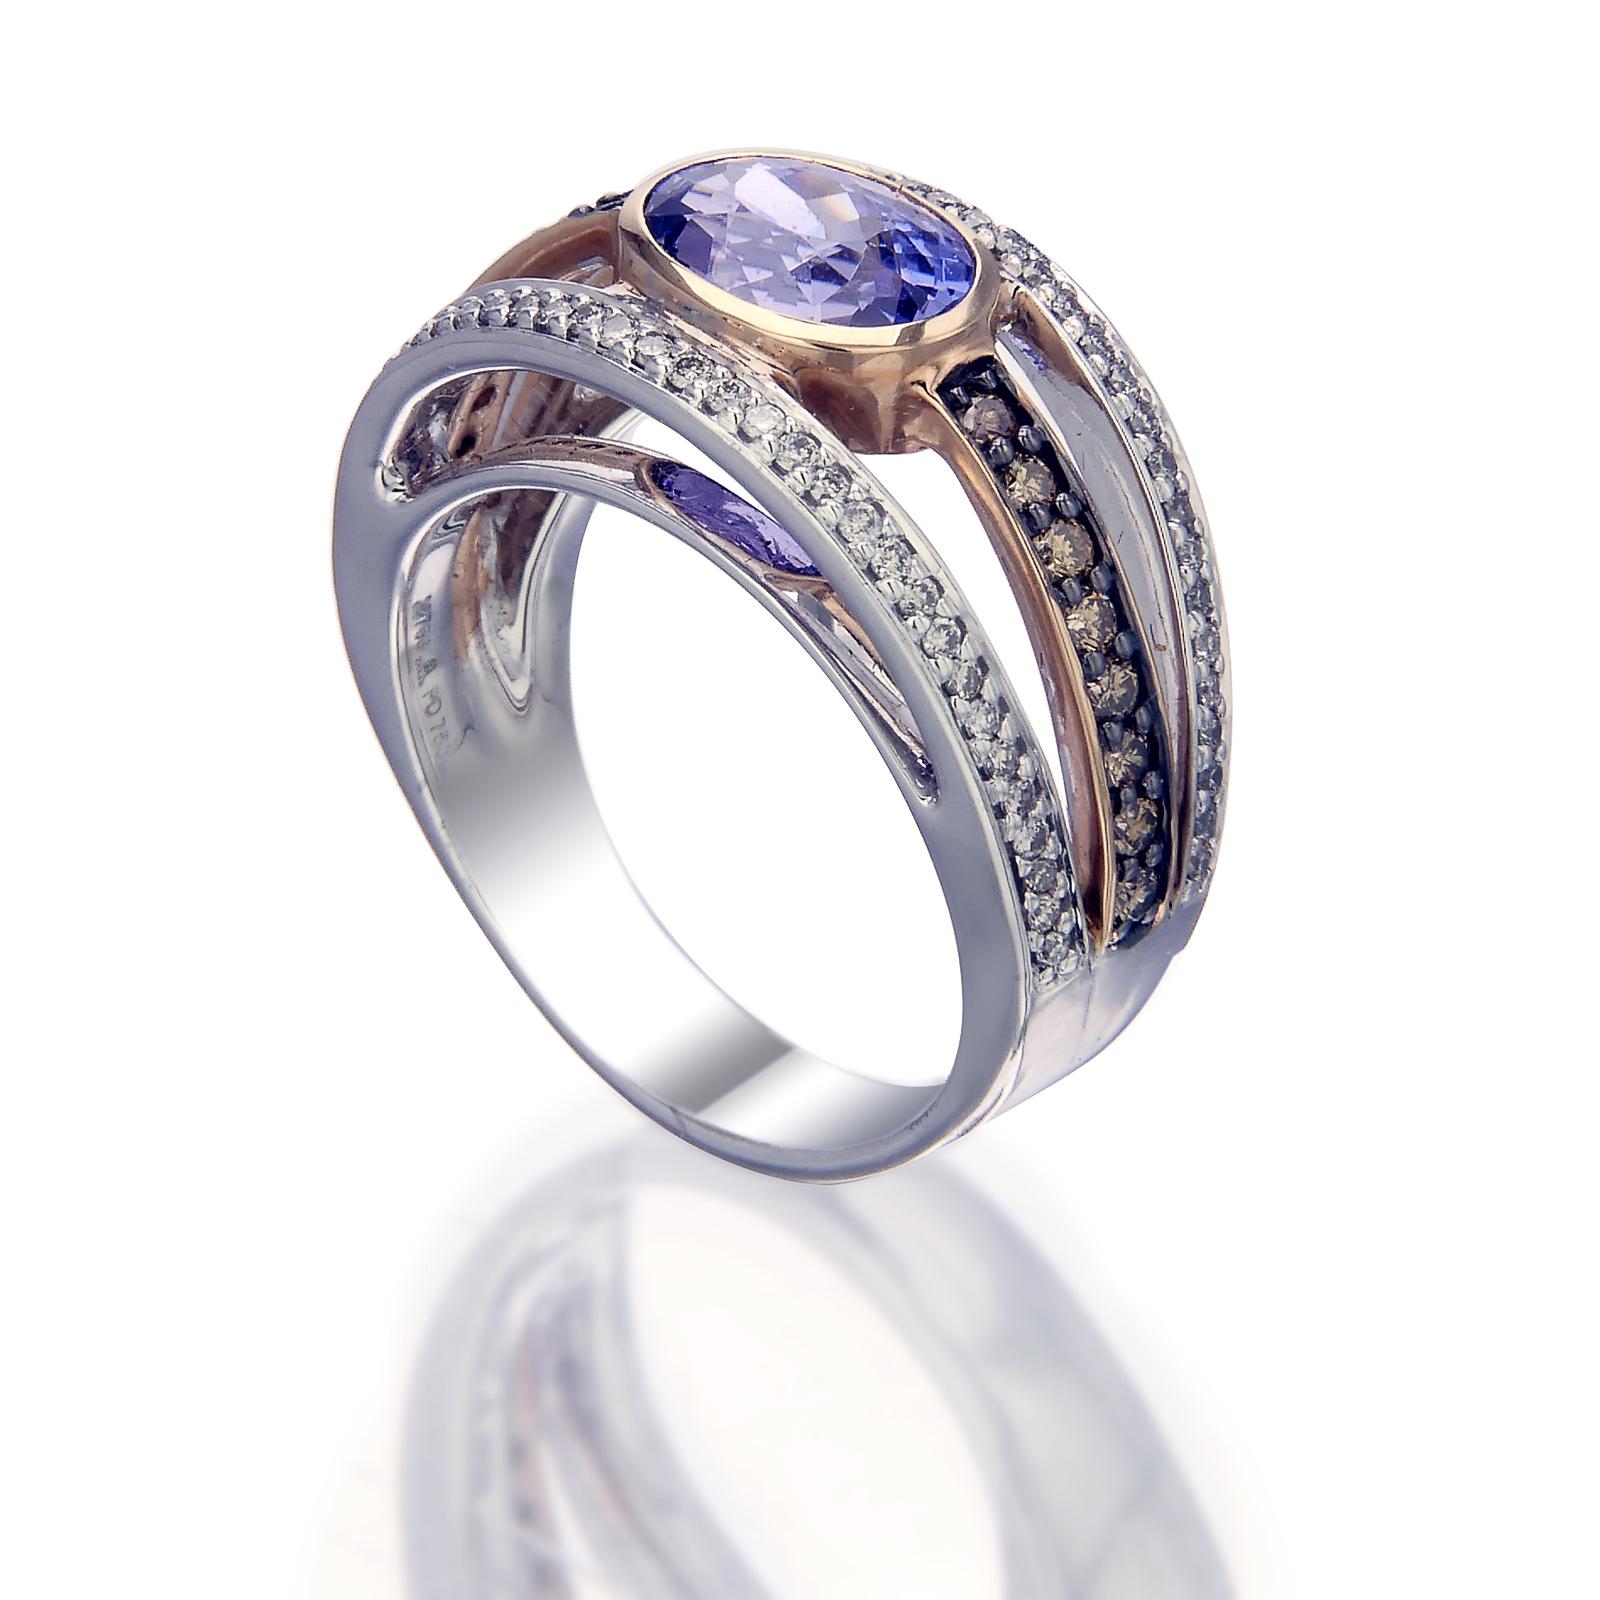 Ein beeindruckender Ring aus Palladium und 18 Karat Roségold mit dem warmen Glanz eines ovalen Tansaniten von 2,65 Karat, der von drei Reihen weißer Diamanten von 0,36 Karat und gelber Diamanten von 0,35 Karat gesäumt wird. Es ist ein Schmuckstück